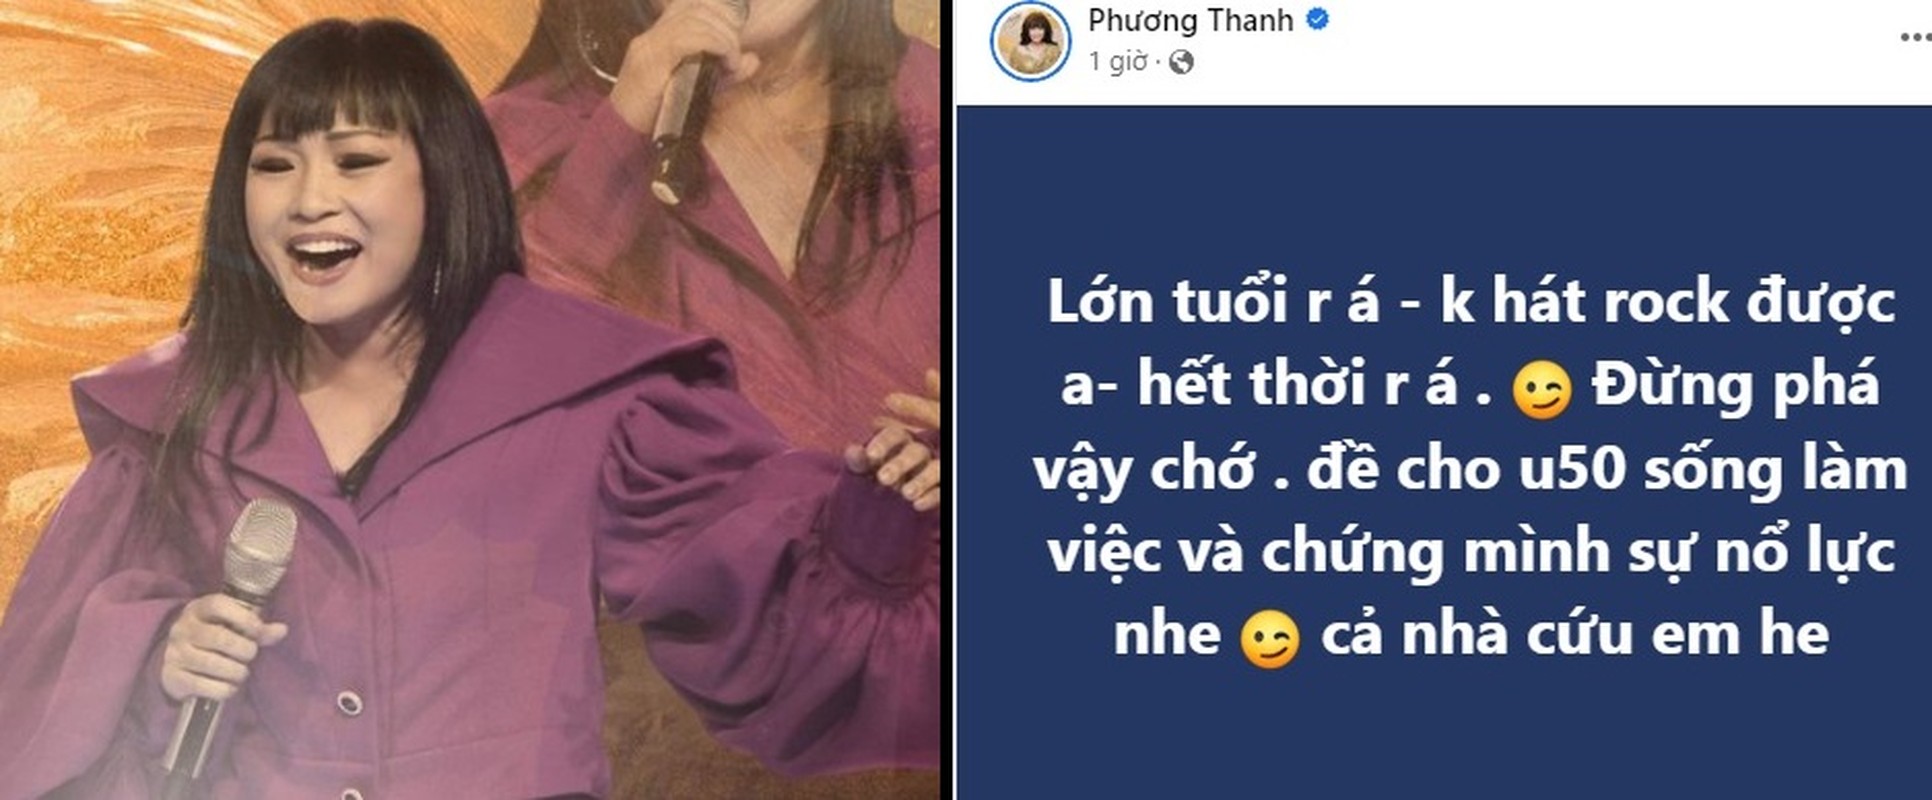 Sao Viet phan ung the nao khi bi che “het thoi“?